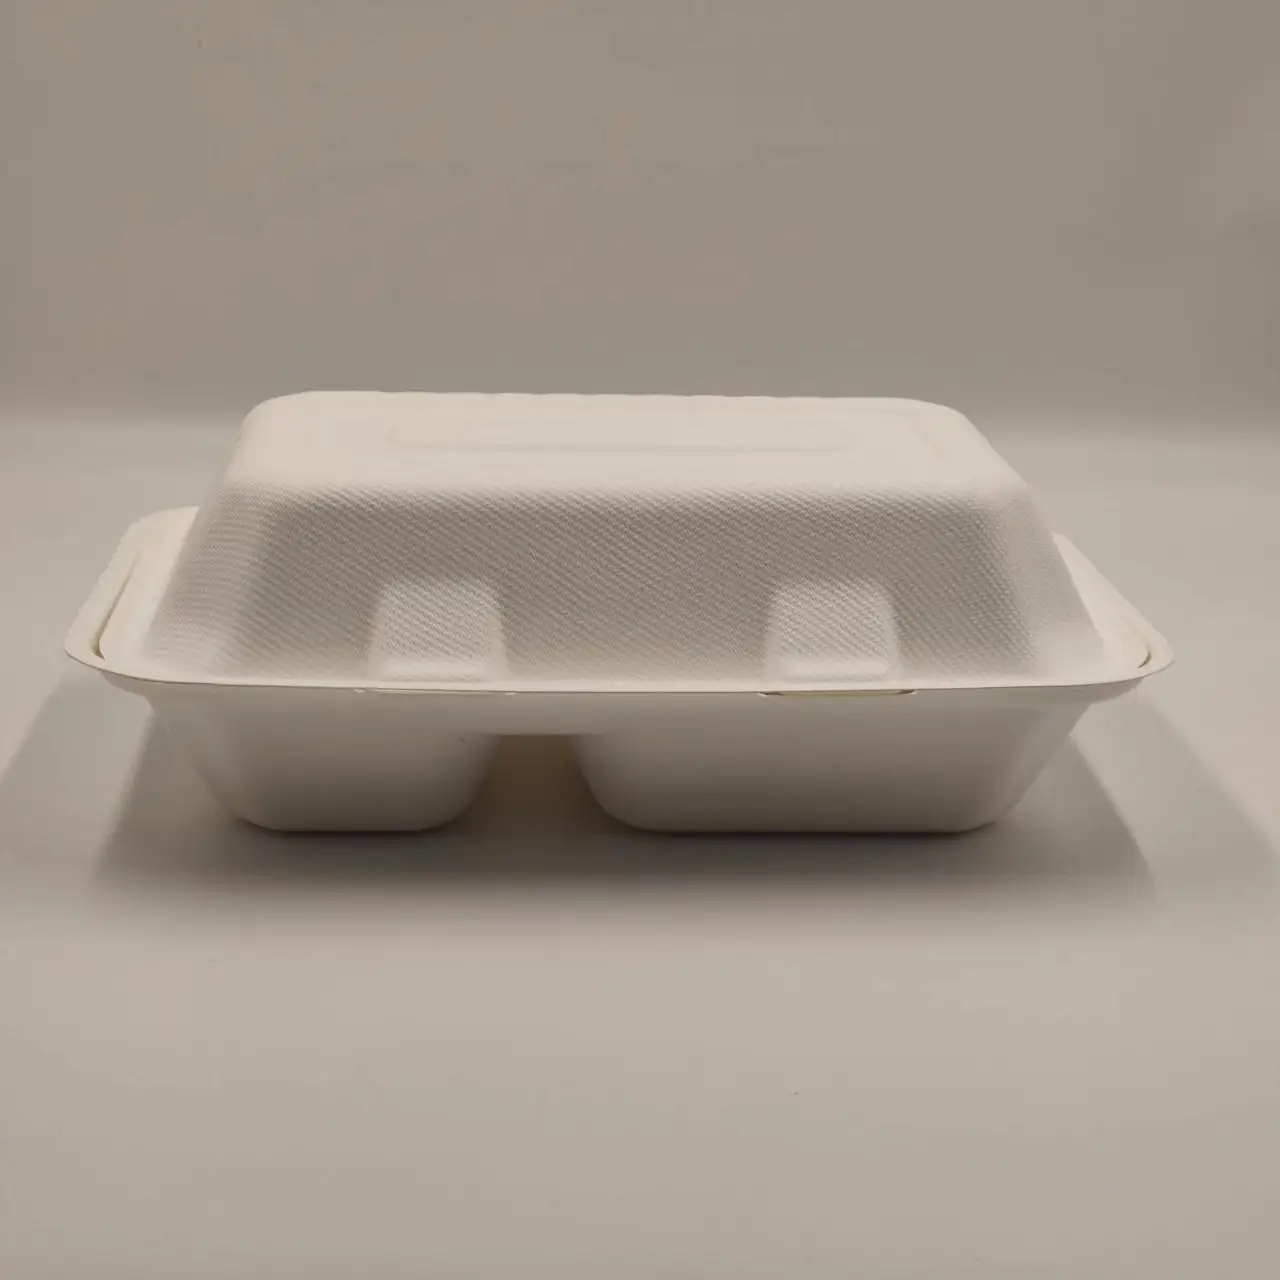 Yemek ambalajı promosyon çözümü için çevre dostu tek kullanımlık plastik öğle yemeği kutuları sürdürülebilir gıda kapaklı konteyner